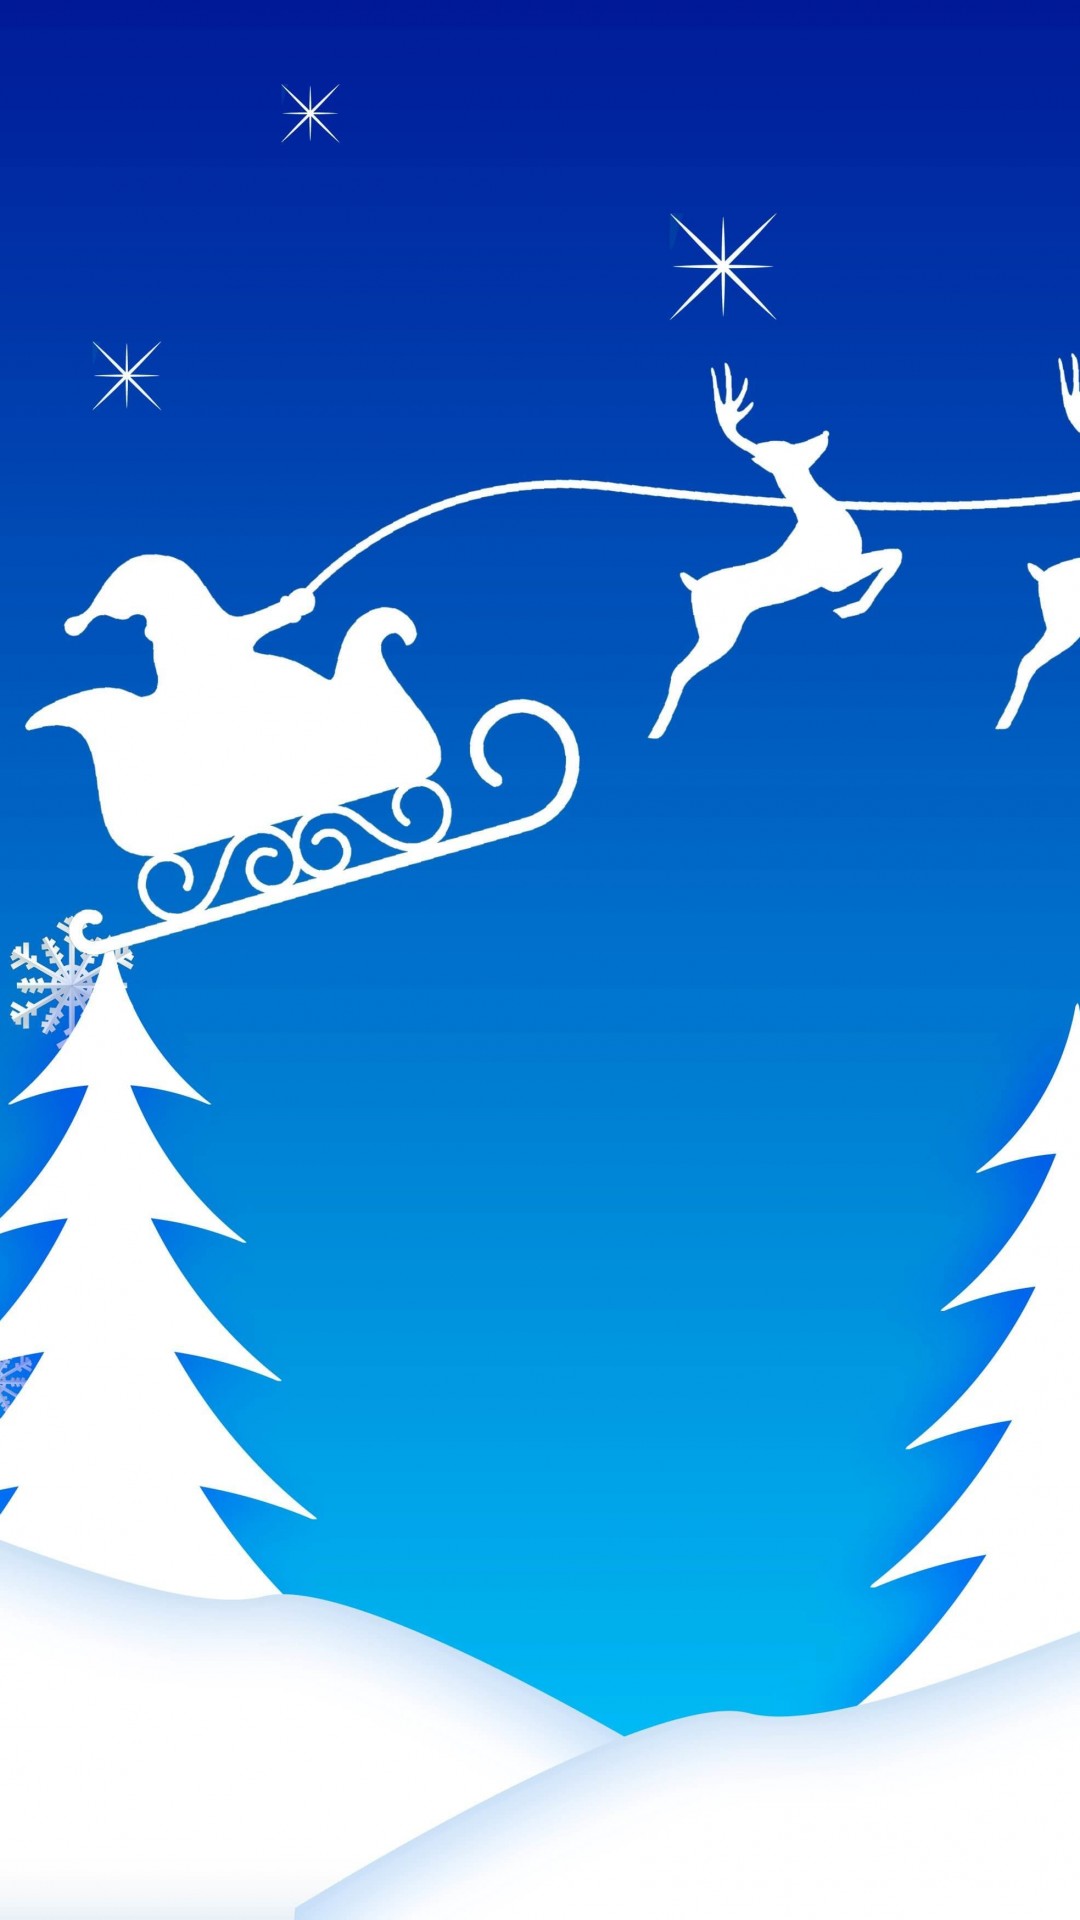 Santa’s Sleigh Illustration Wallpaper for HTC One